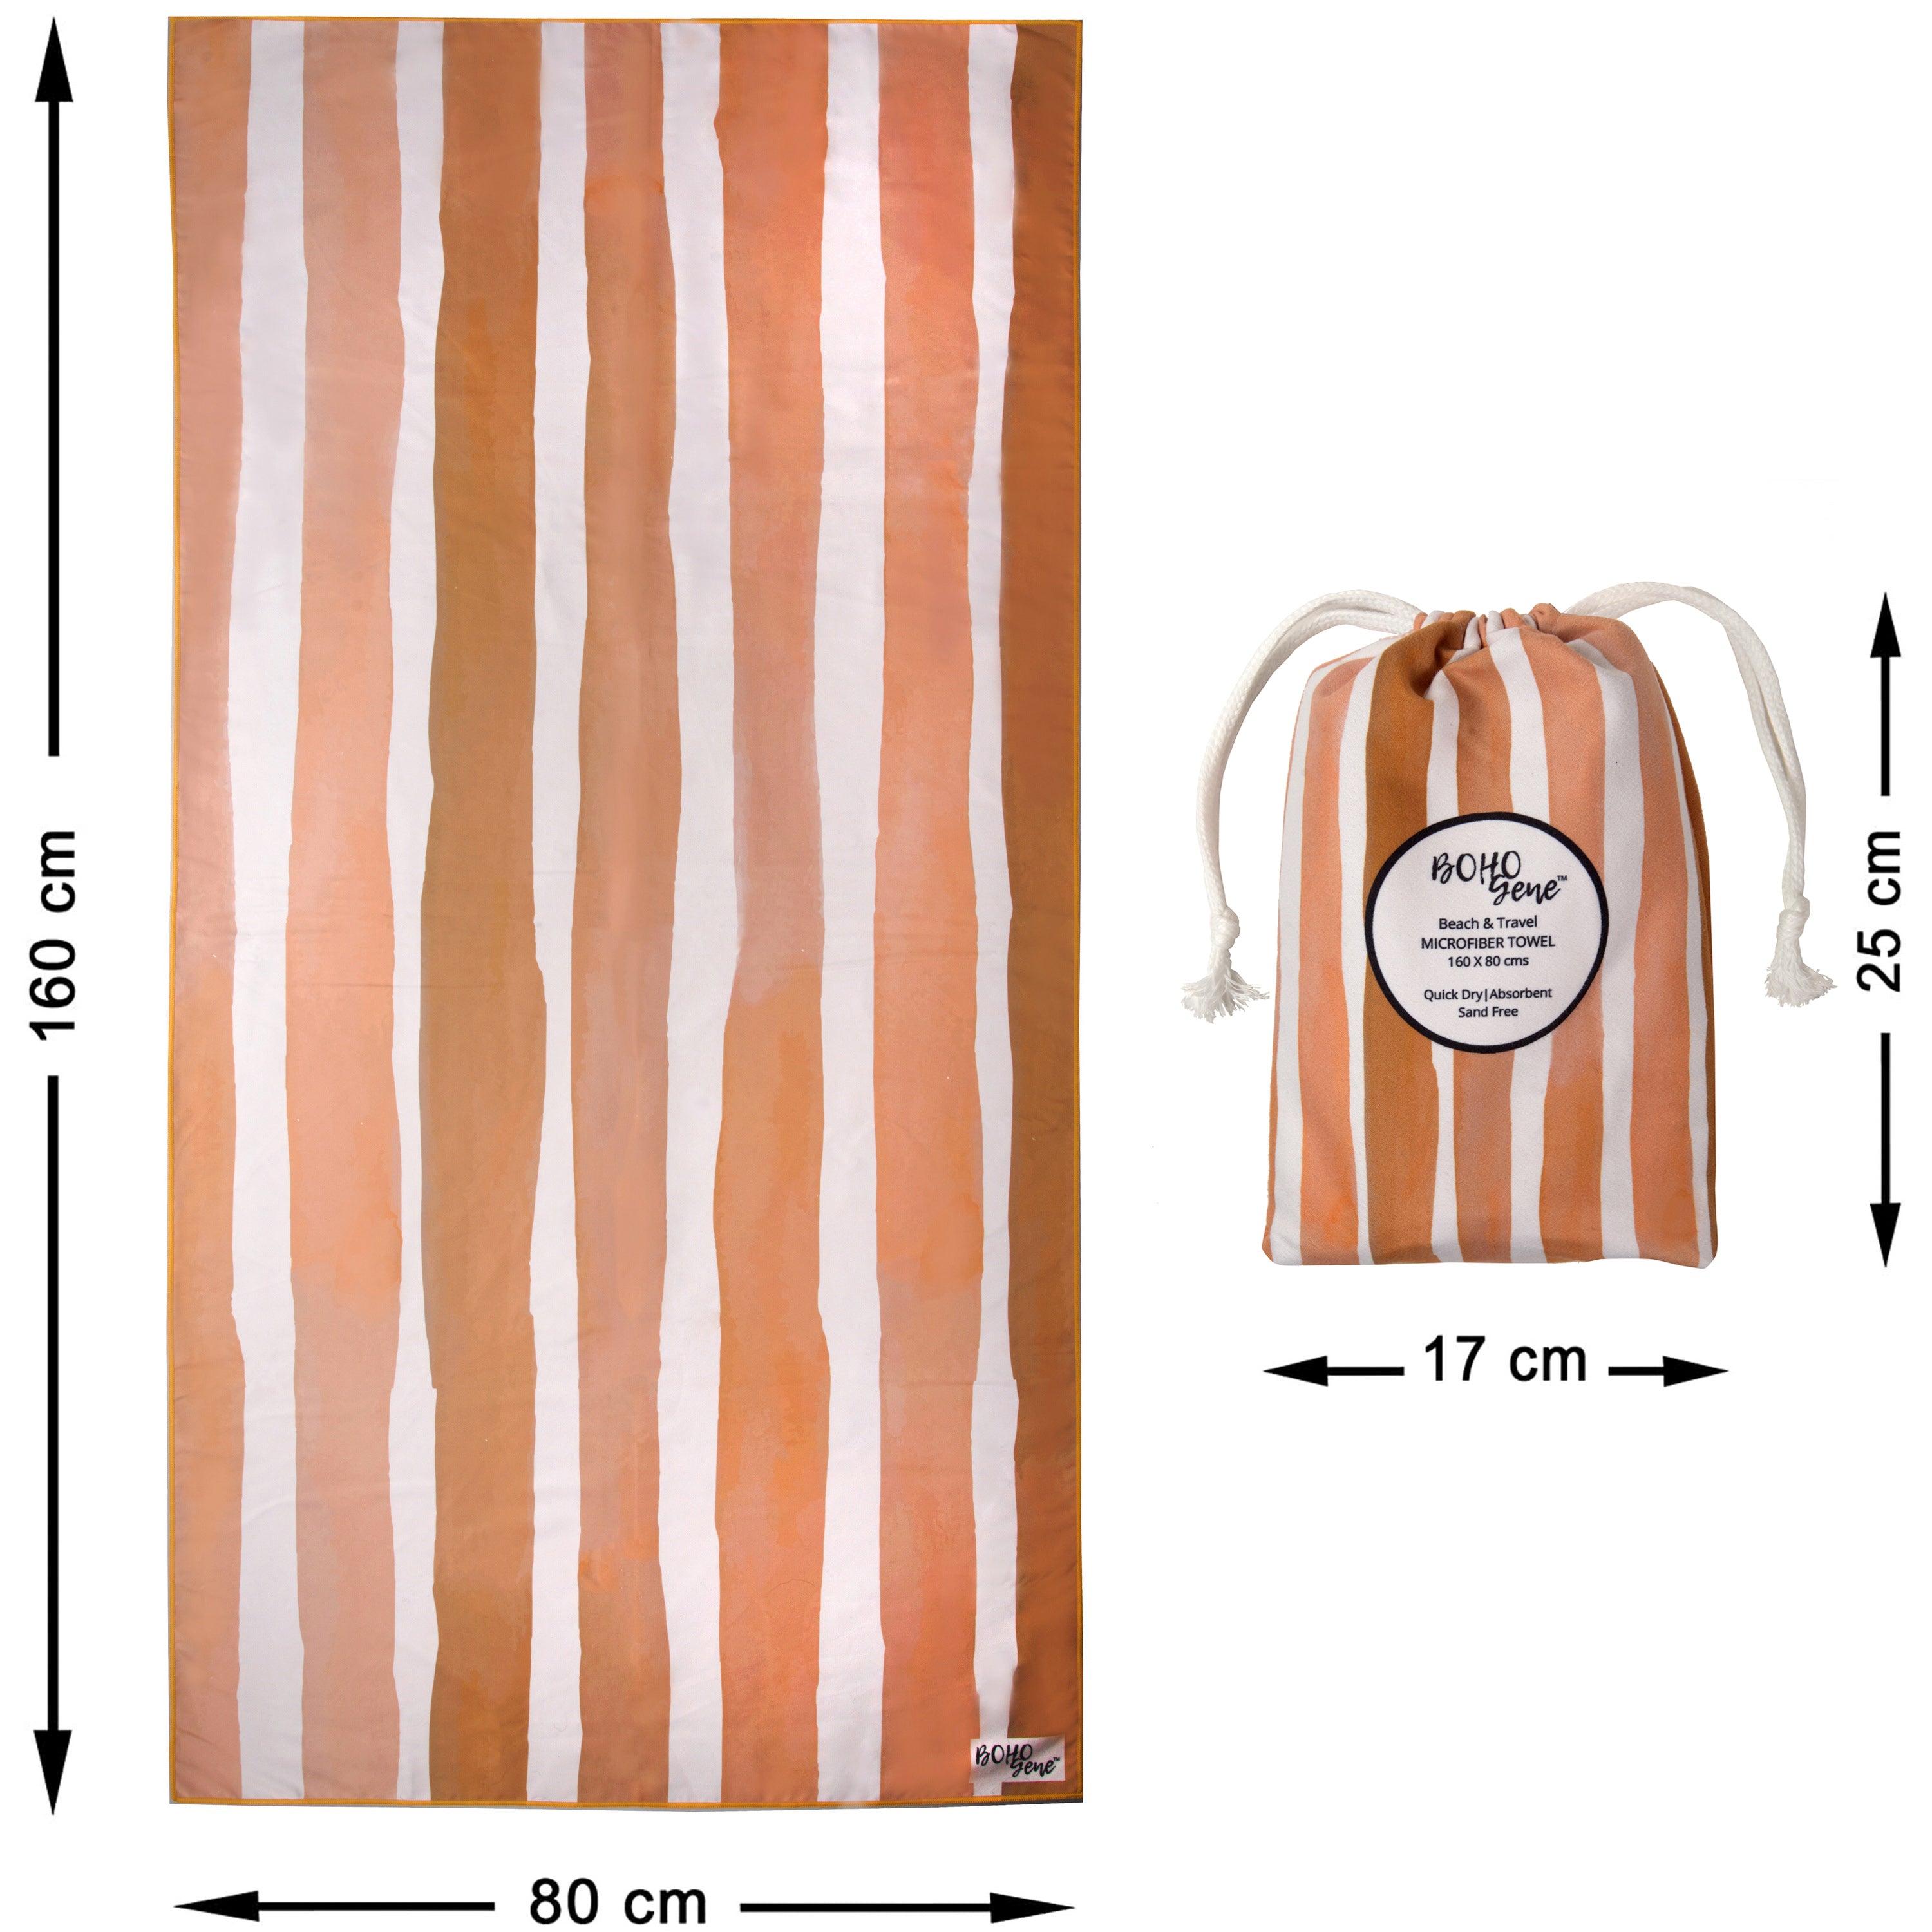 GOLDEN SAND Striped Beach Towel